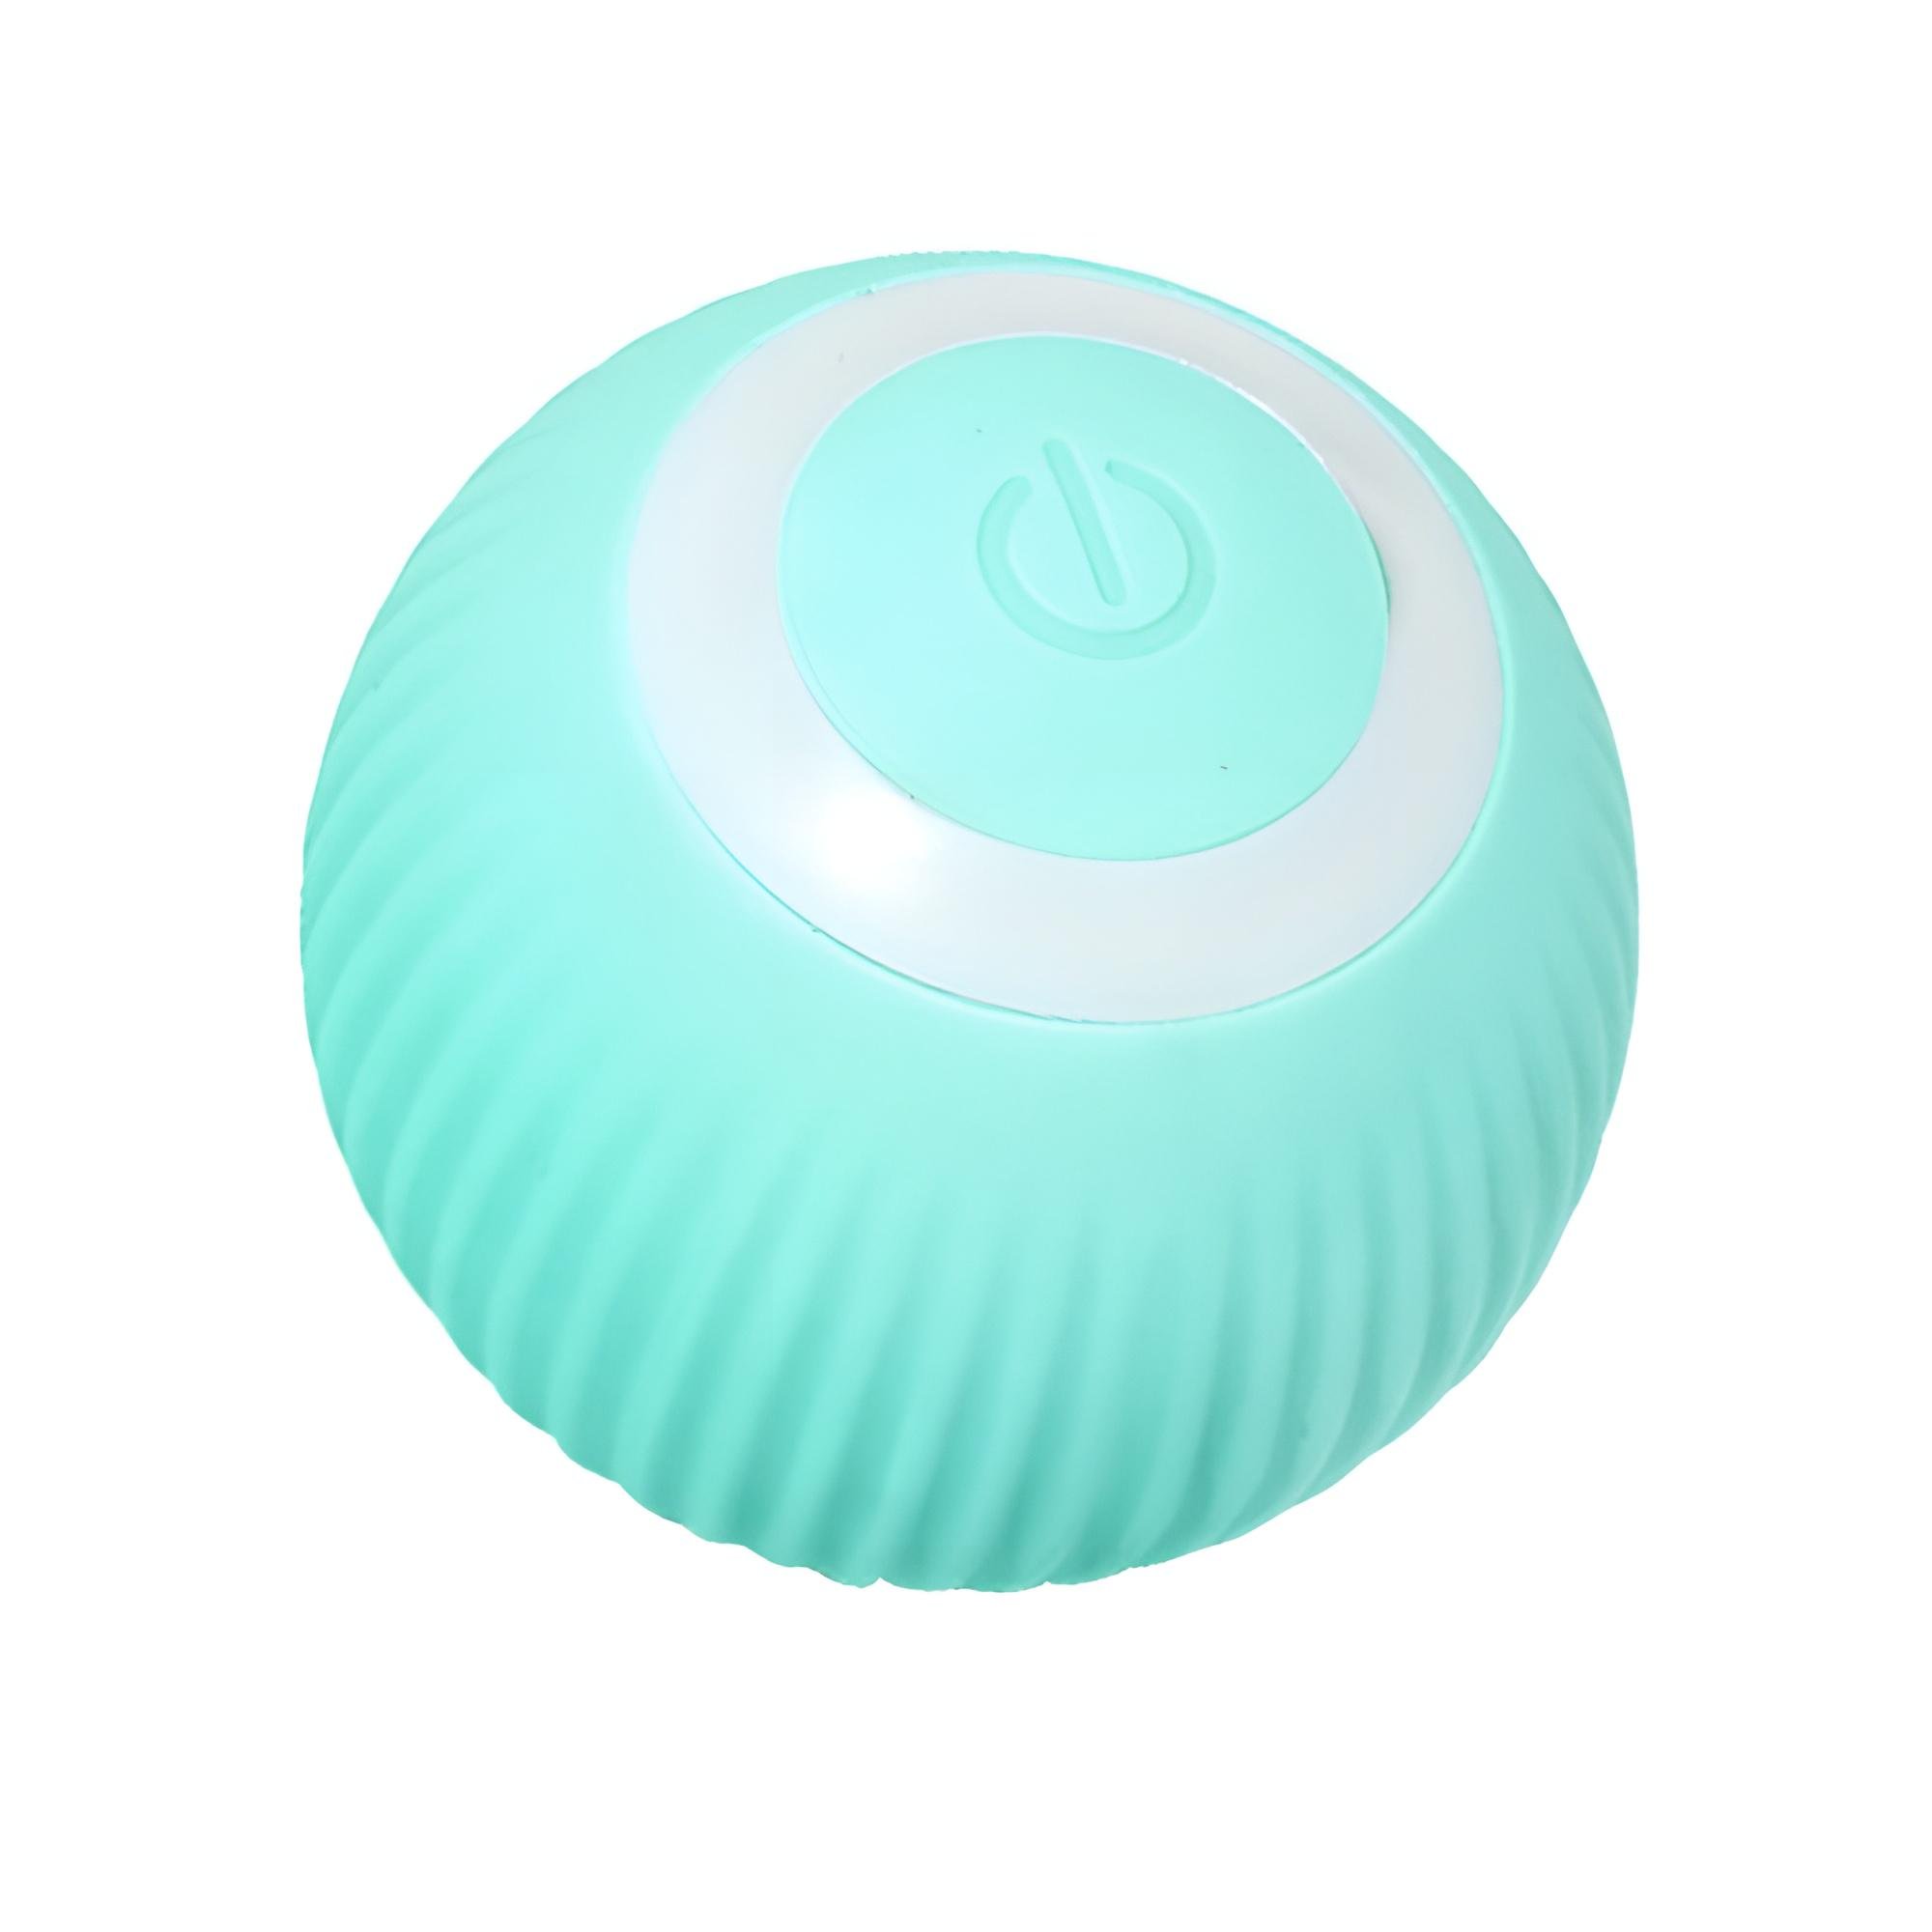 ᐉ Мячик для животных автоматический с USB-зарядкой в комплекте Голубой  (00809-02)